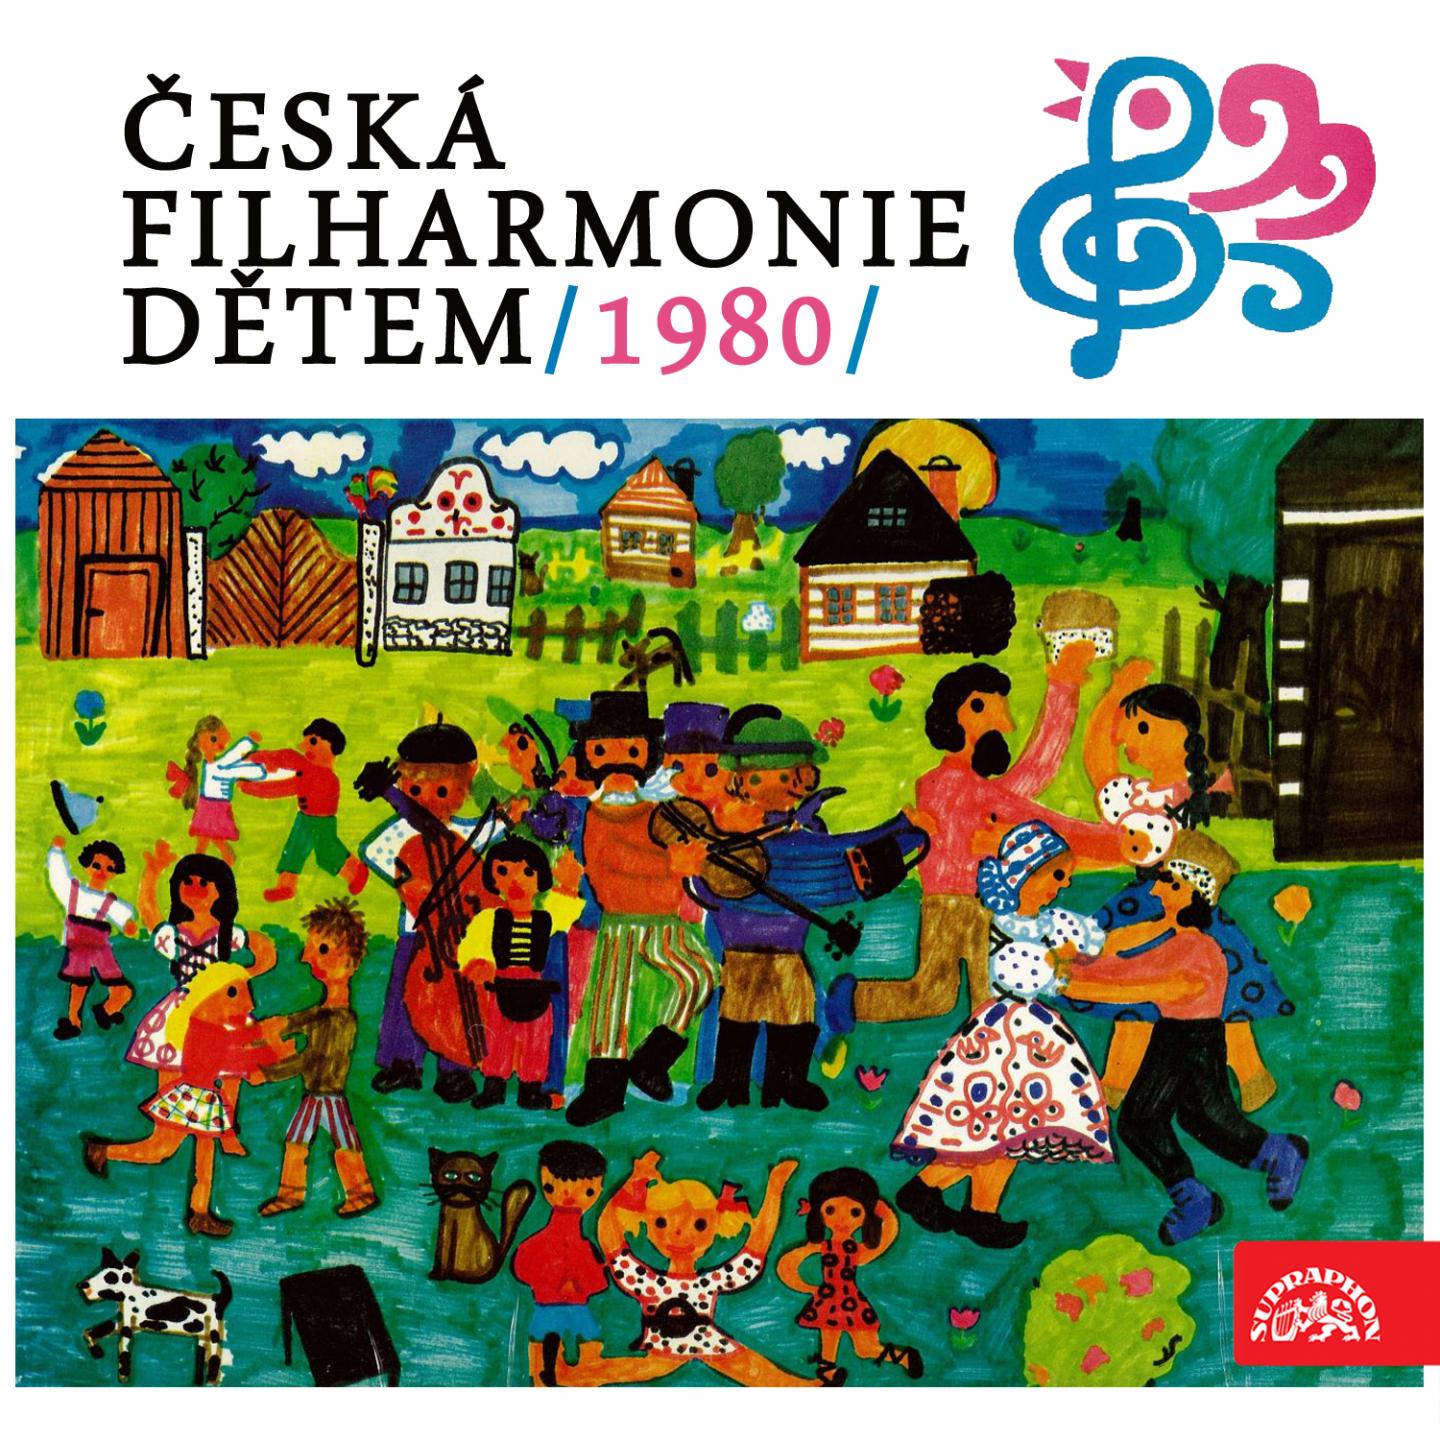 eska filharmonie de tem 1980